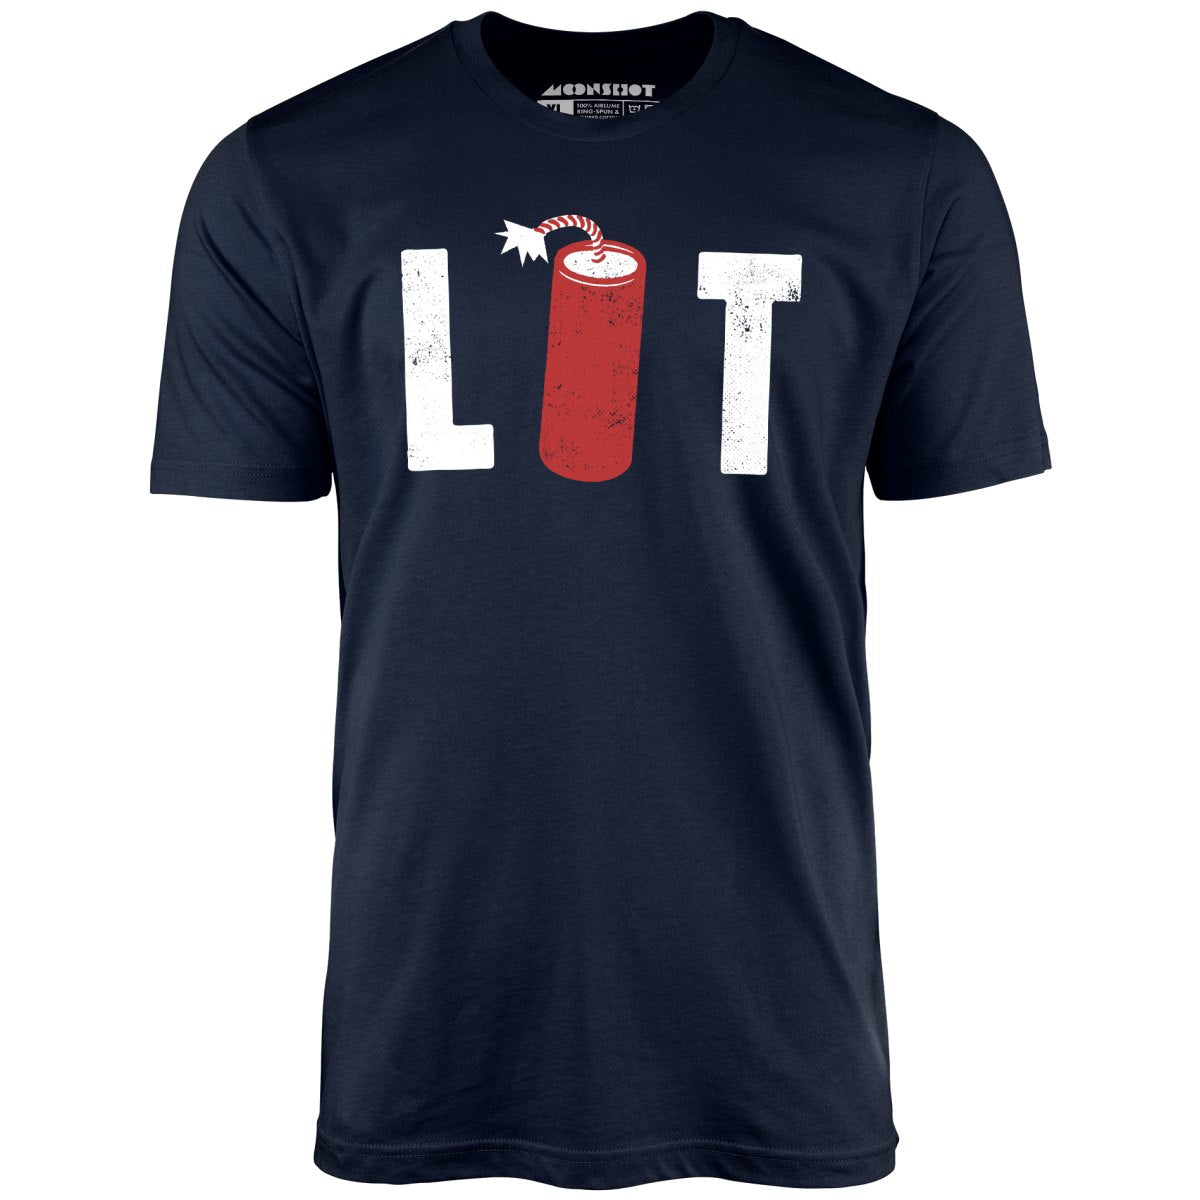 Lit - Unisex T-Shirt